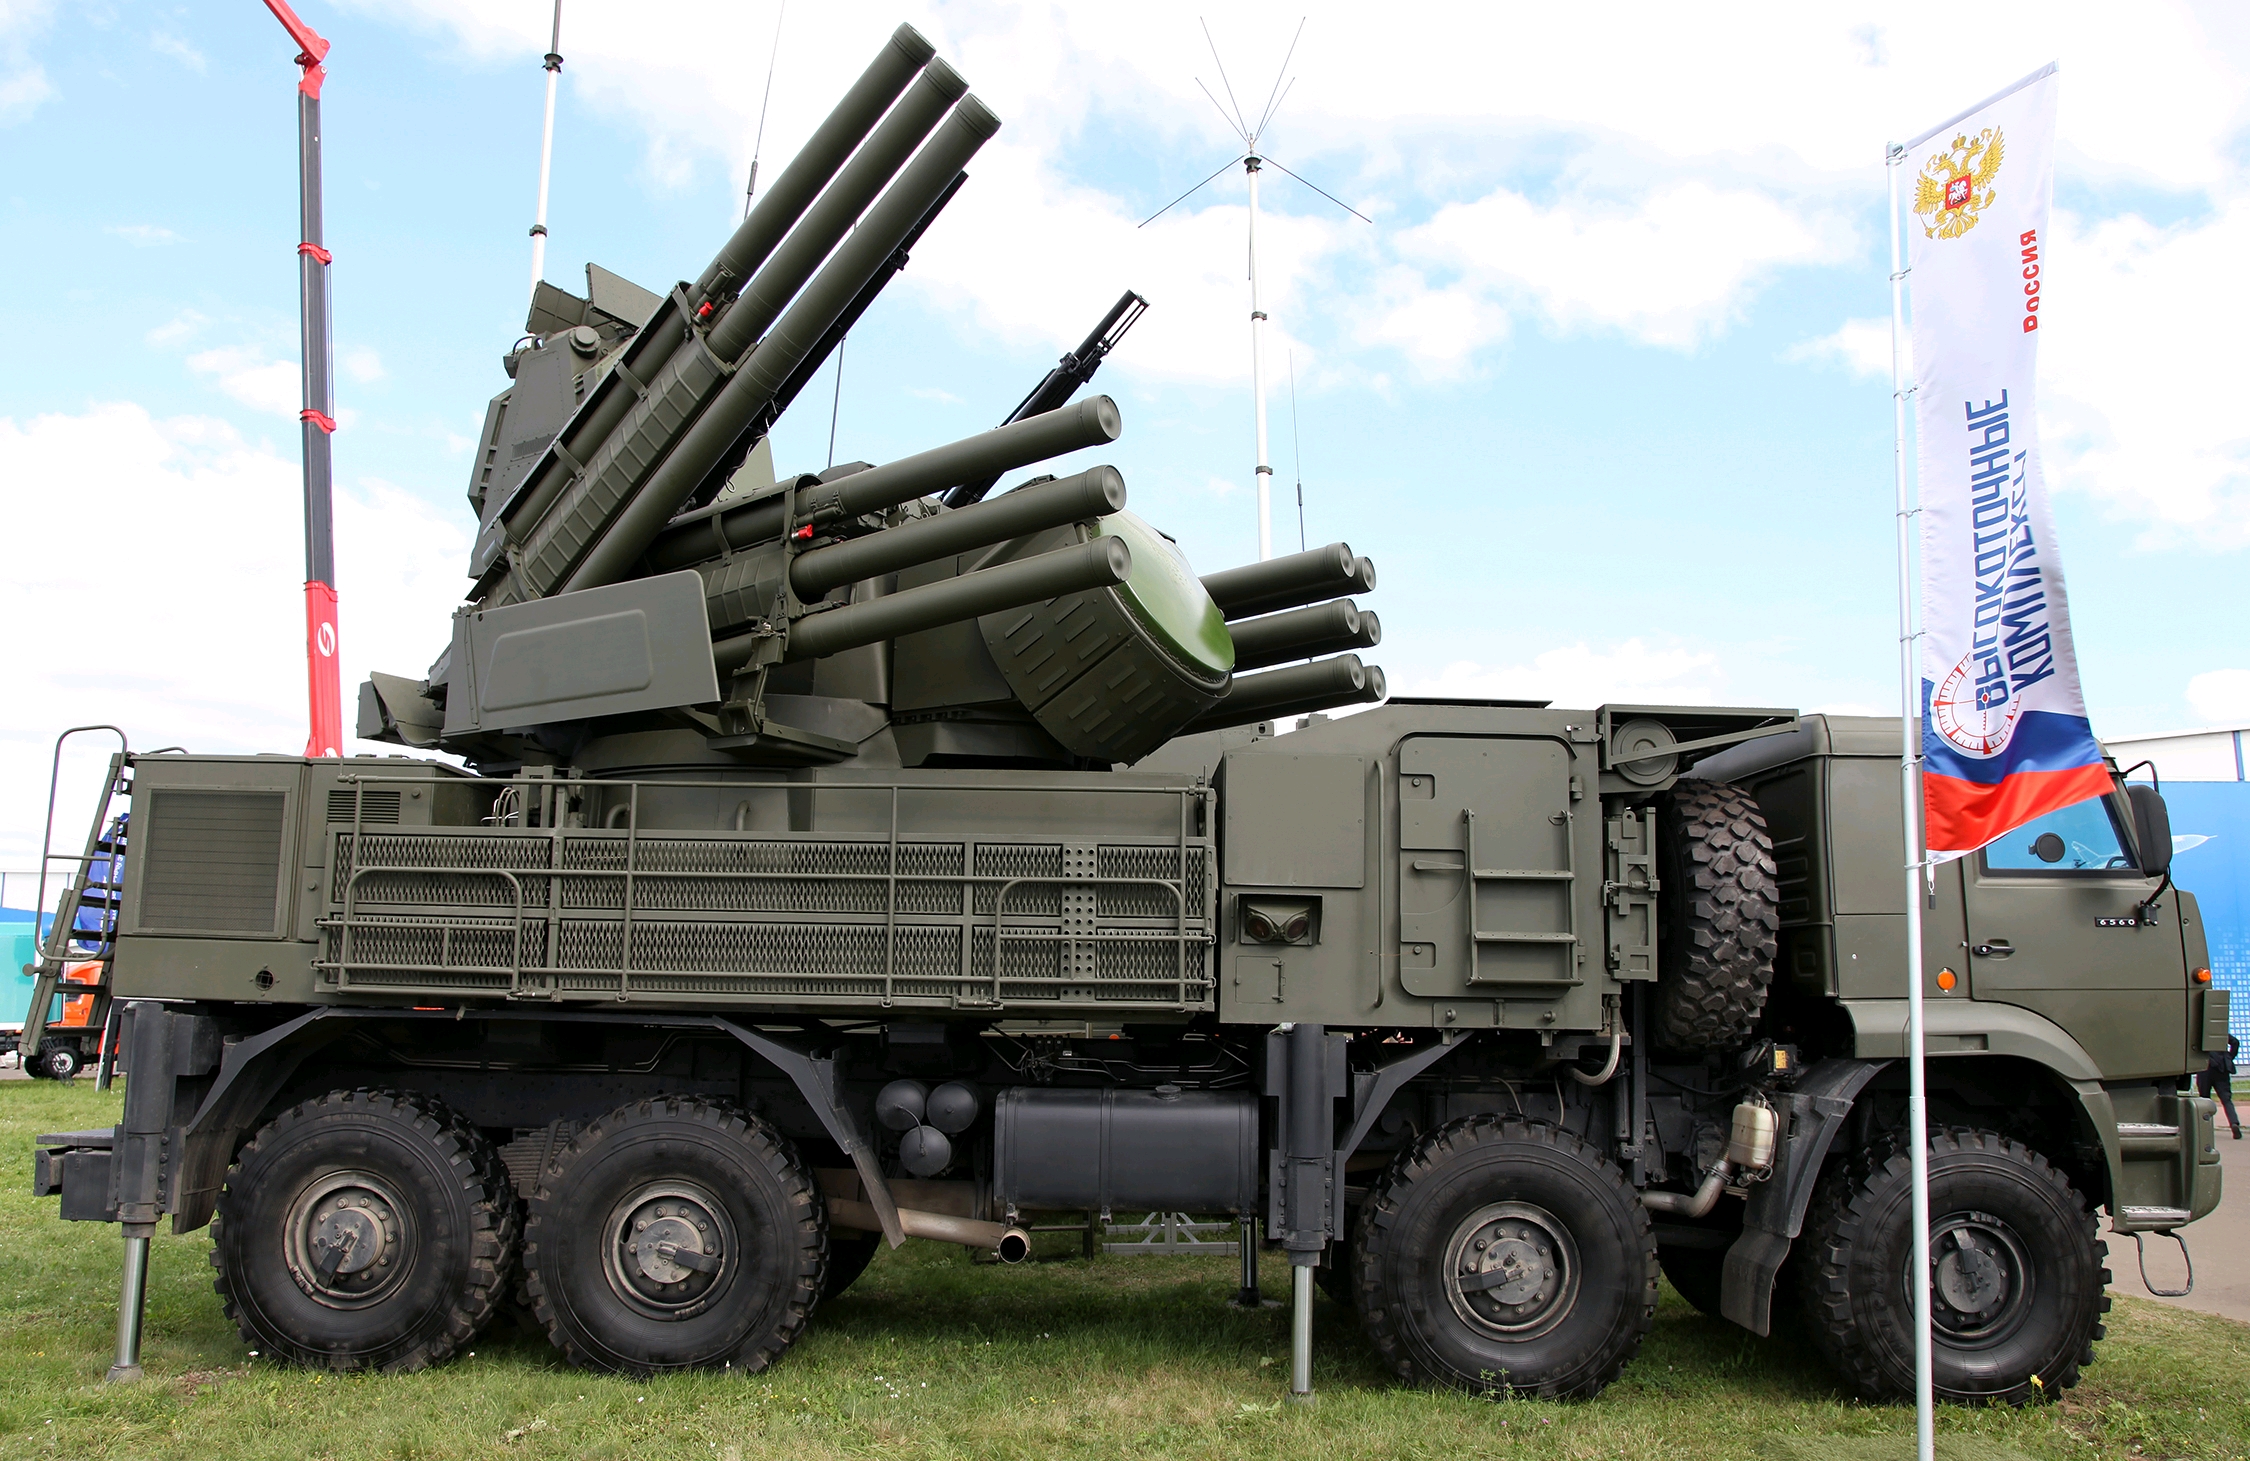 俄罗斯厂家在军队-2021防务展上展示了新的铠甲-s1m弹炮合一防空系统